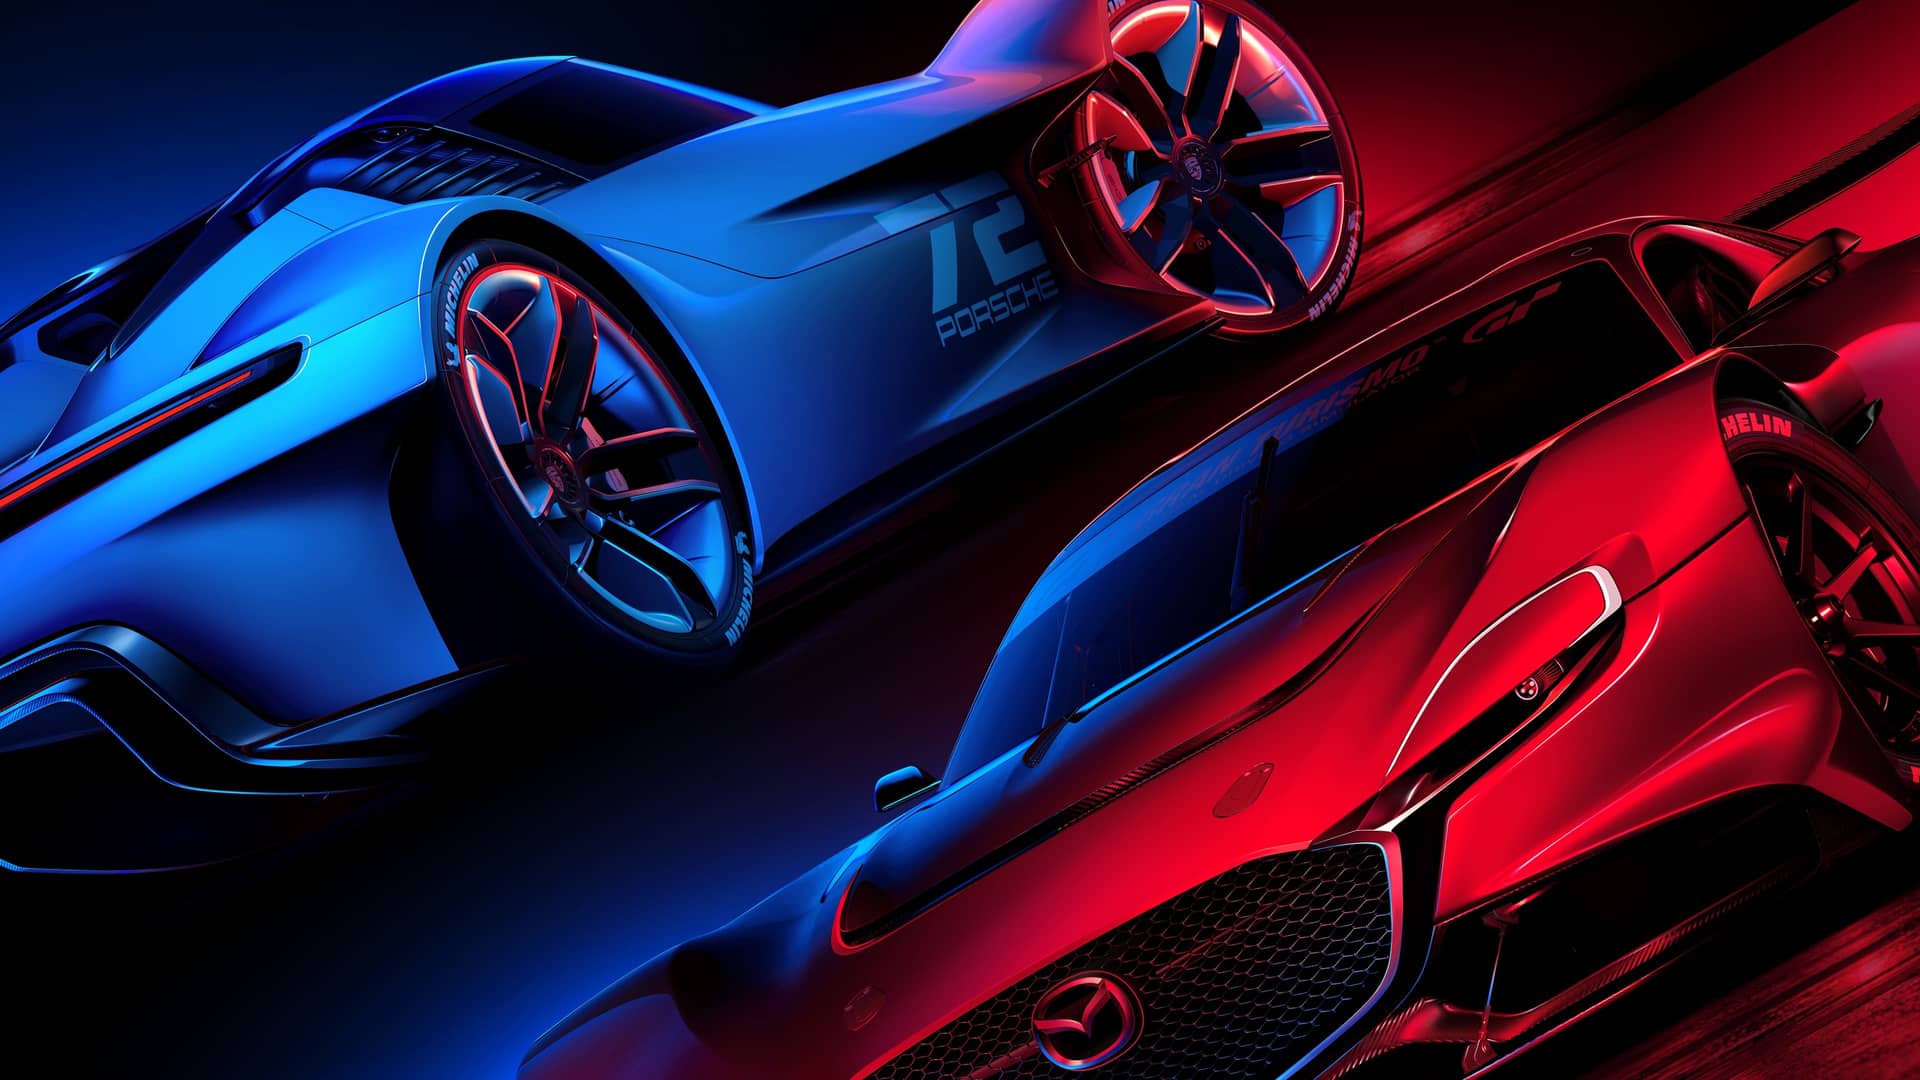 artwork del juego Gran Turismo 7 que es uno de los mejores juegos de coches para la ps4